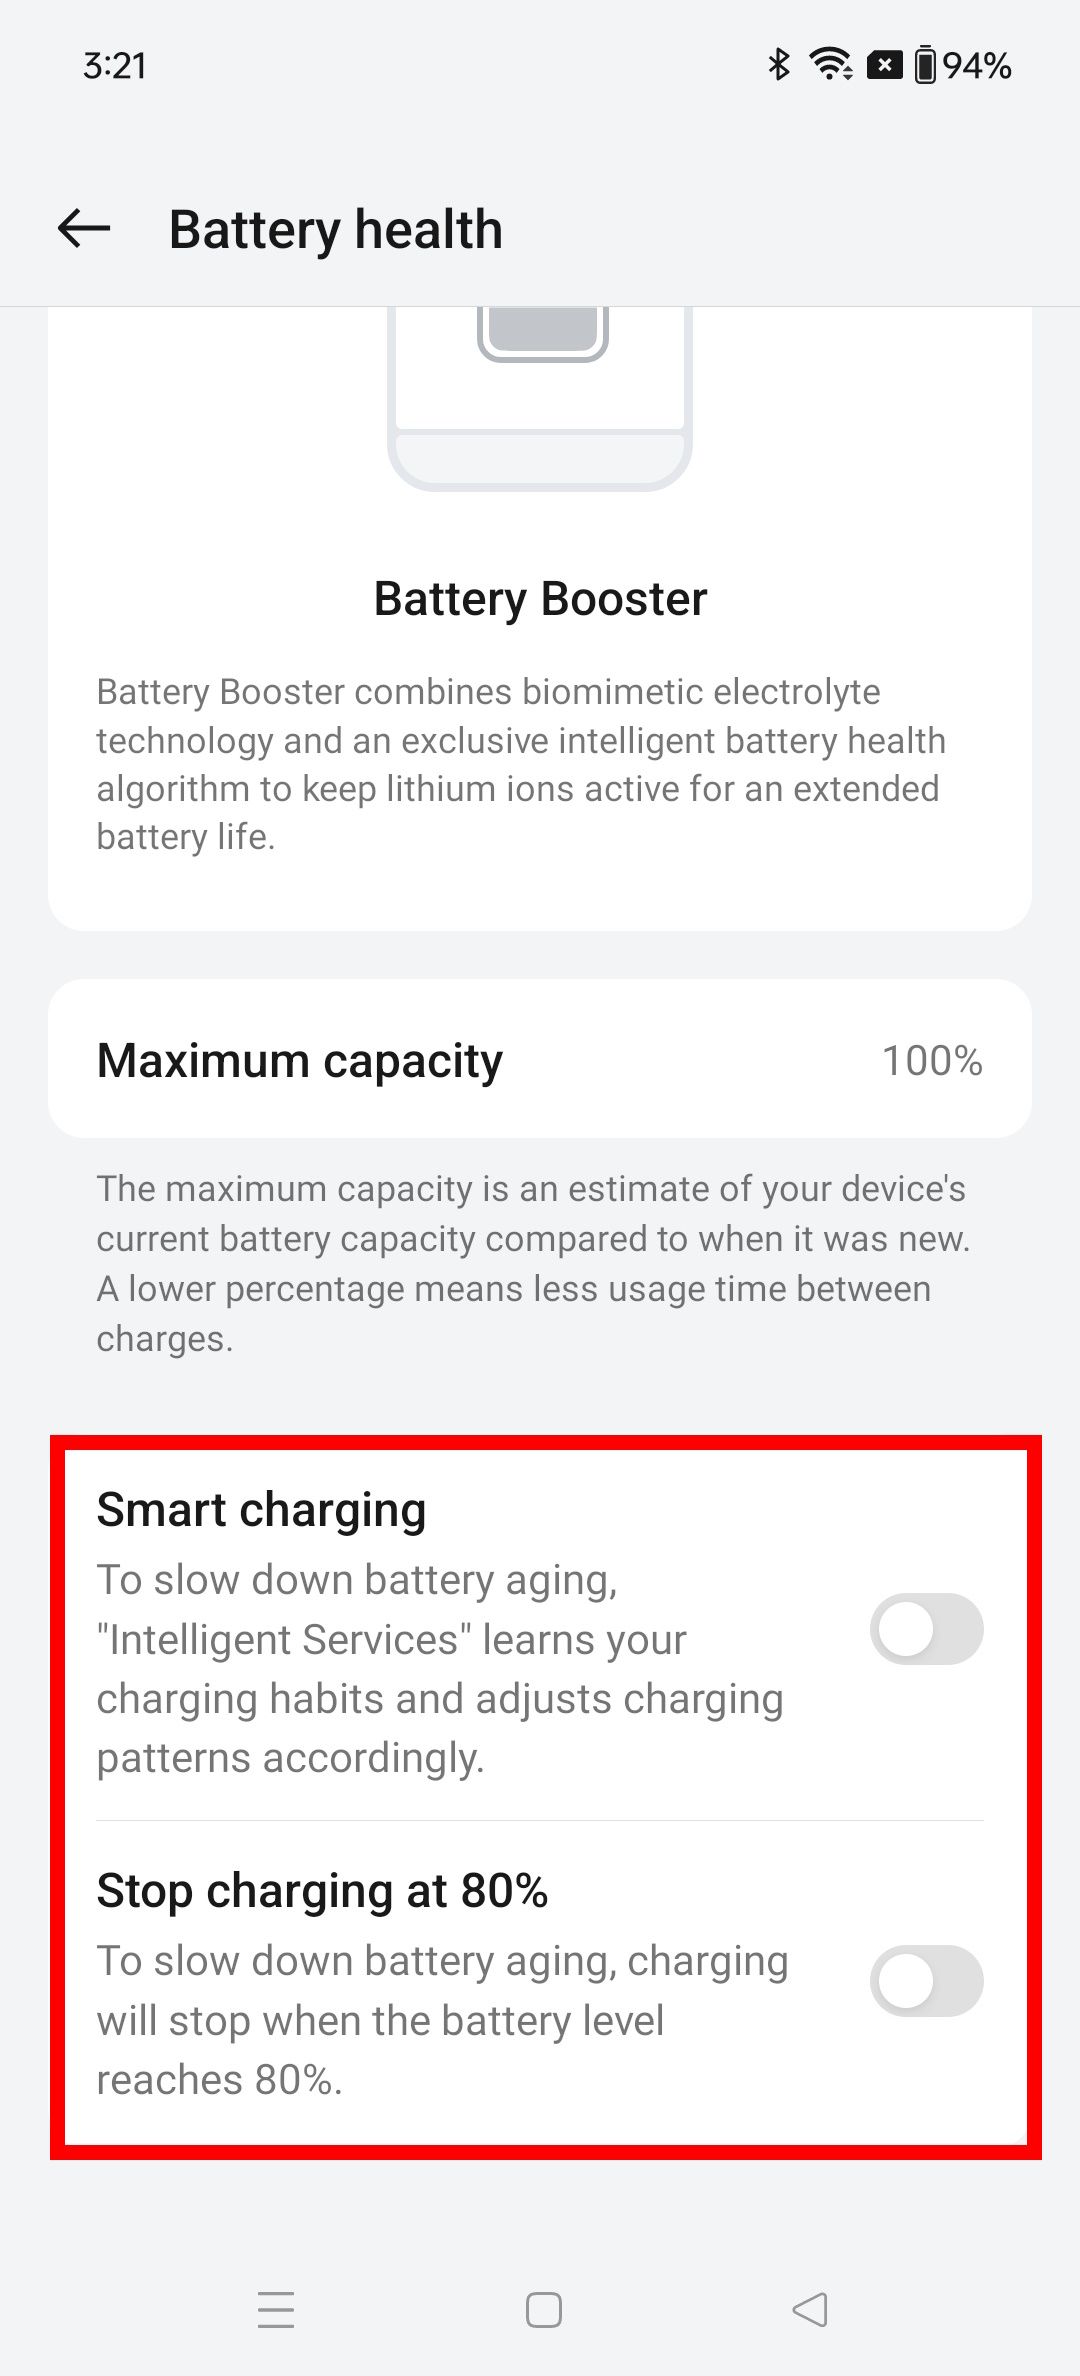 Contorno de retângulo vermelho destacando as opções de alternância de carregamento inteligente e parada de carregamento em 80% na página de integridade da bateria do OnePlus